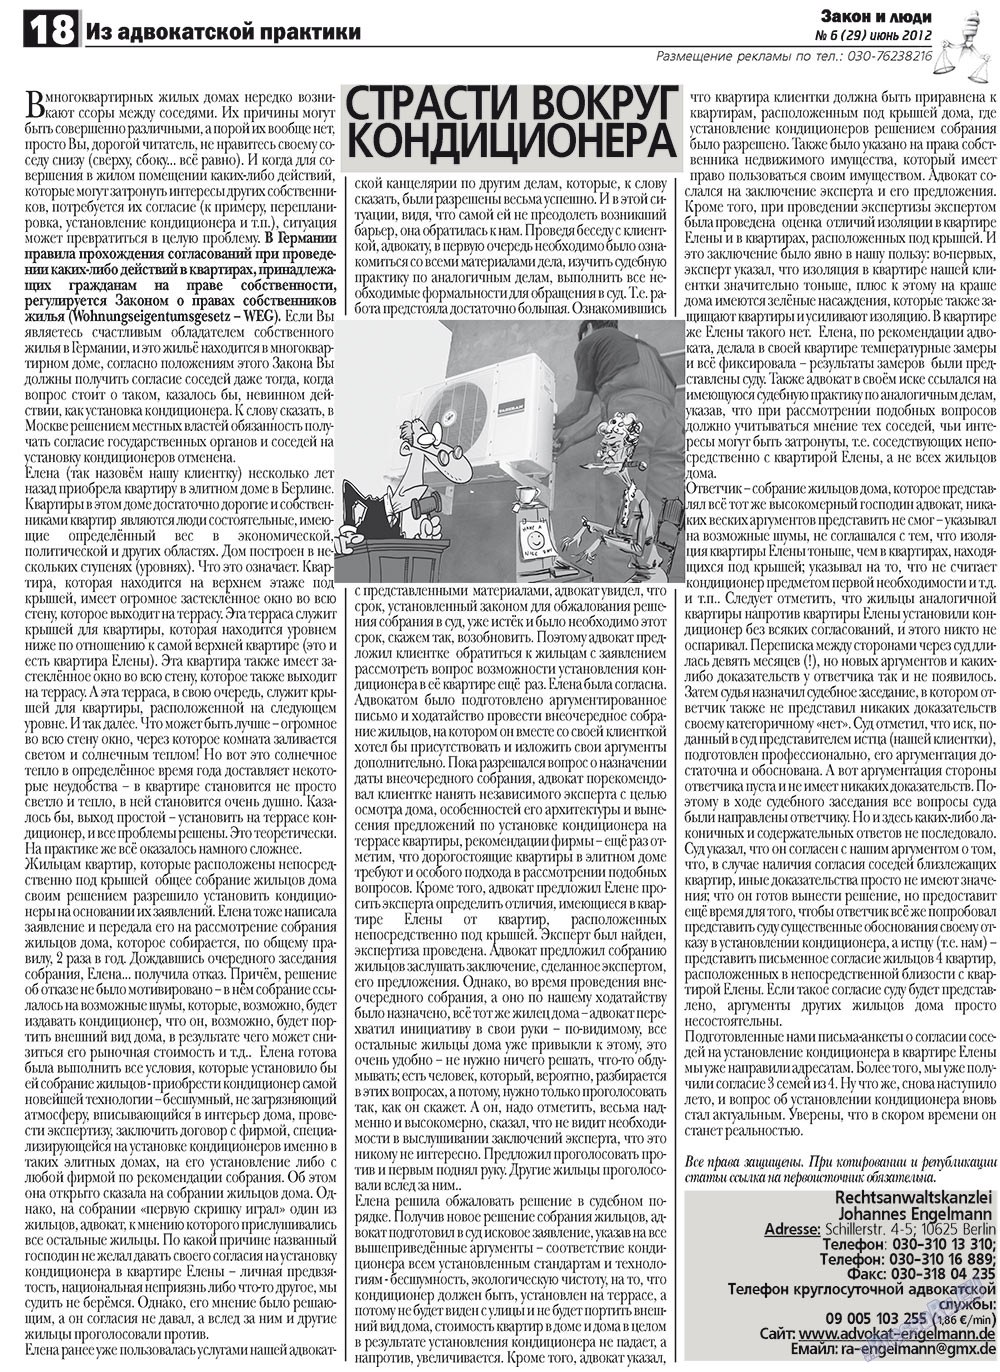 Закон и люди, газета. 2012 №6 стр.18